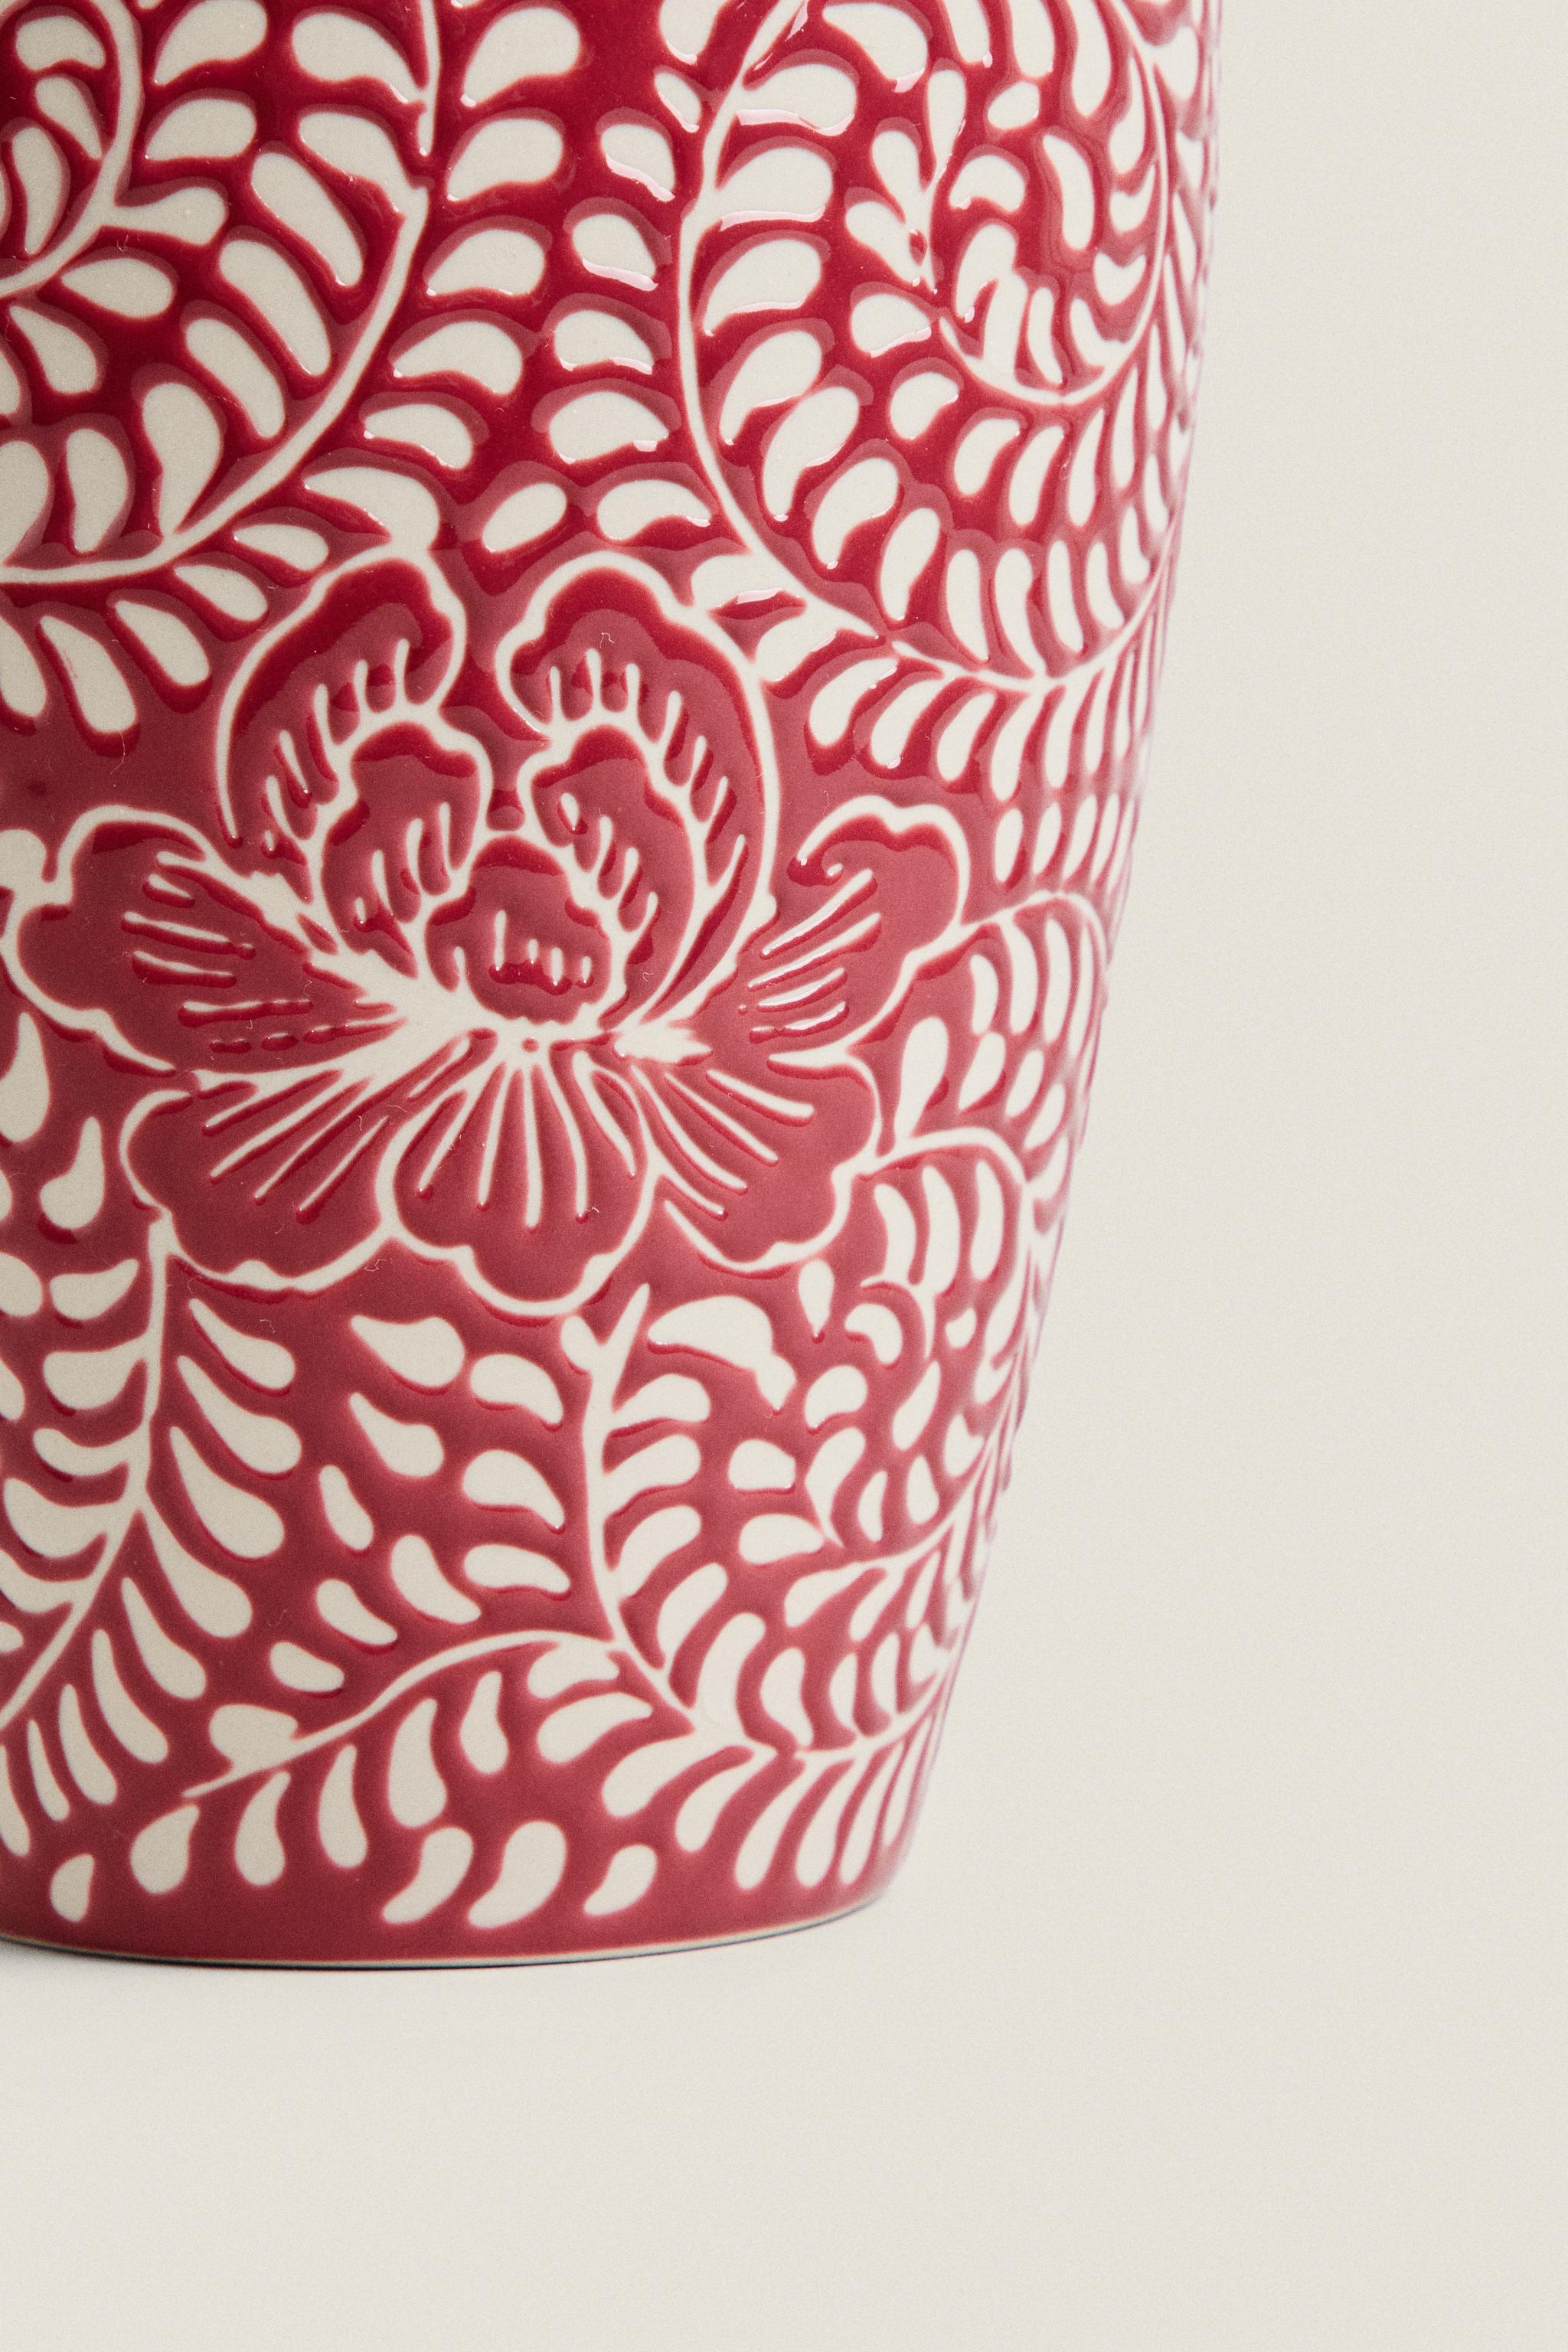 紅色陶瓷花瓶